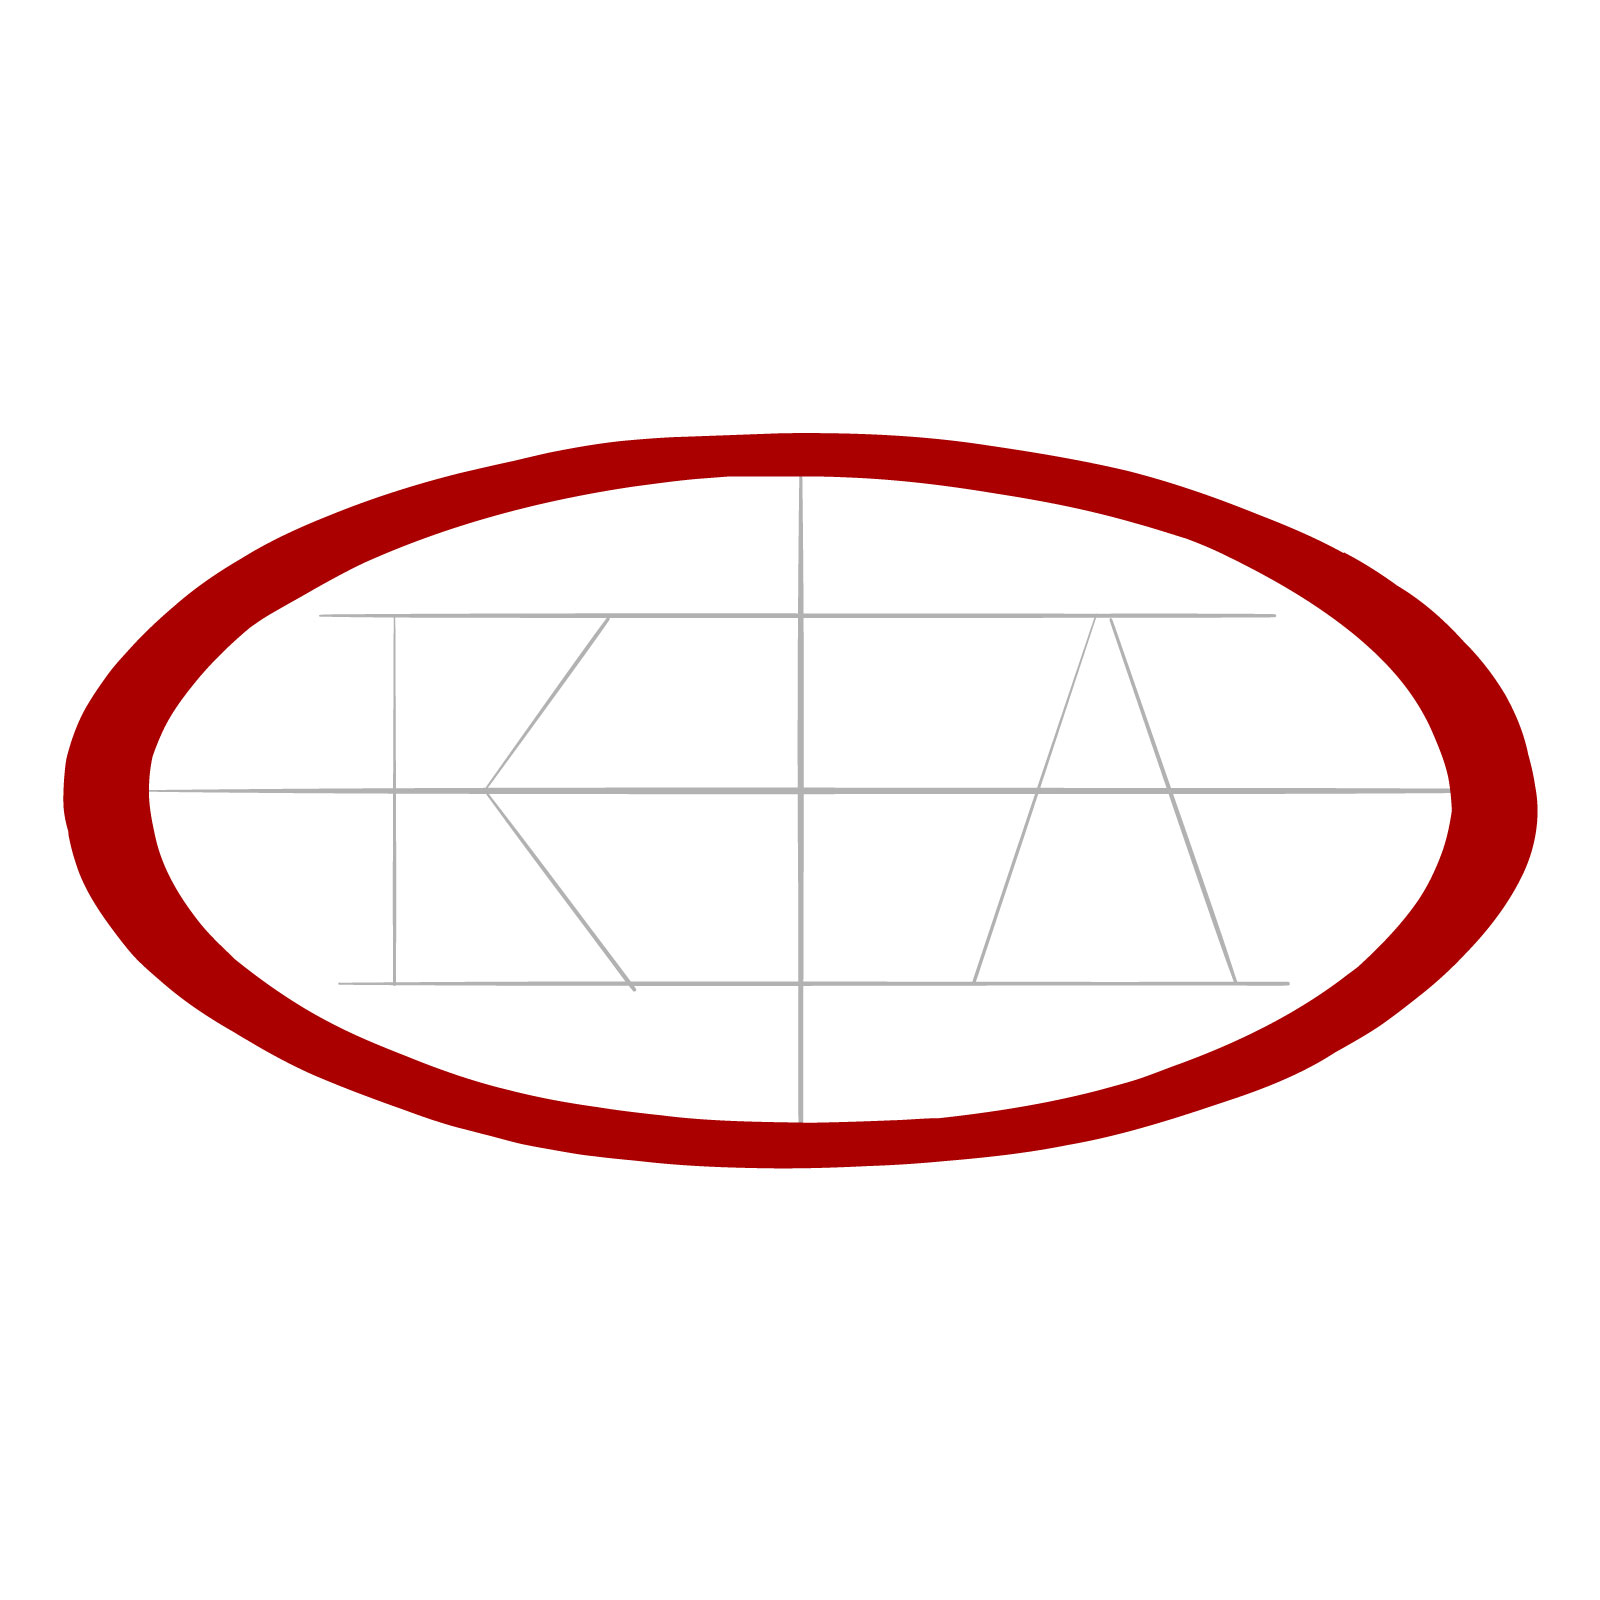 How to draw the KIA logo - step 04